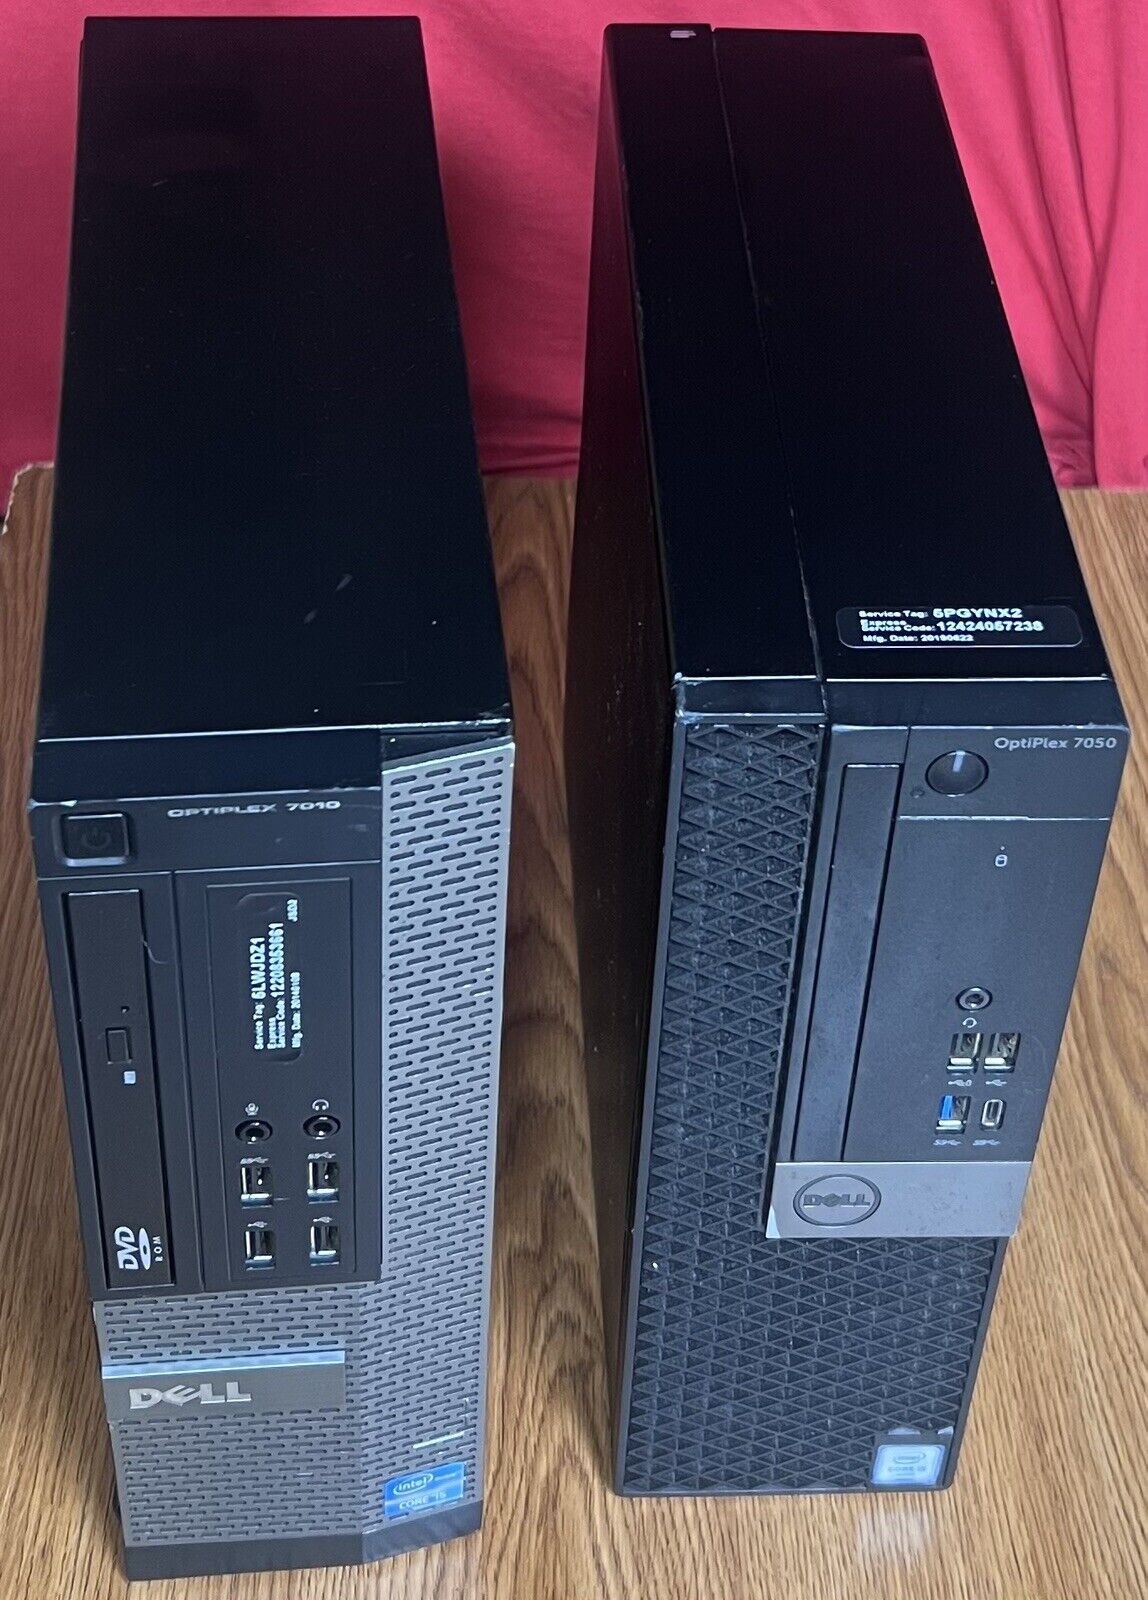 Dell OptiPlex 7050 And 7010 Desktop Computers I5.